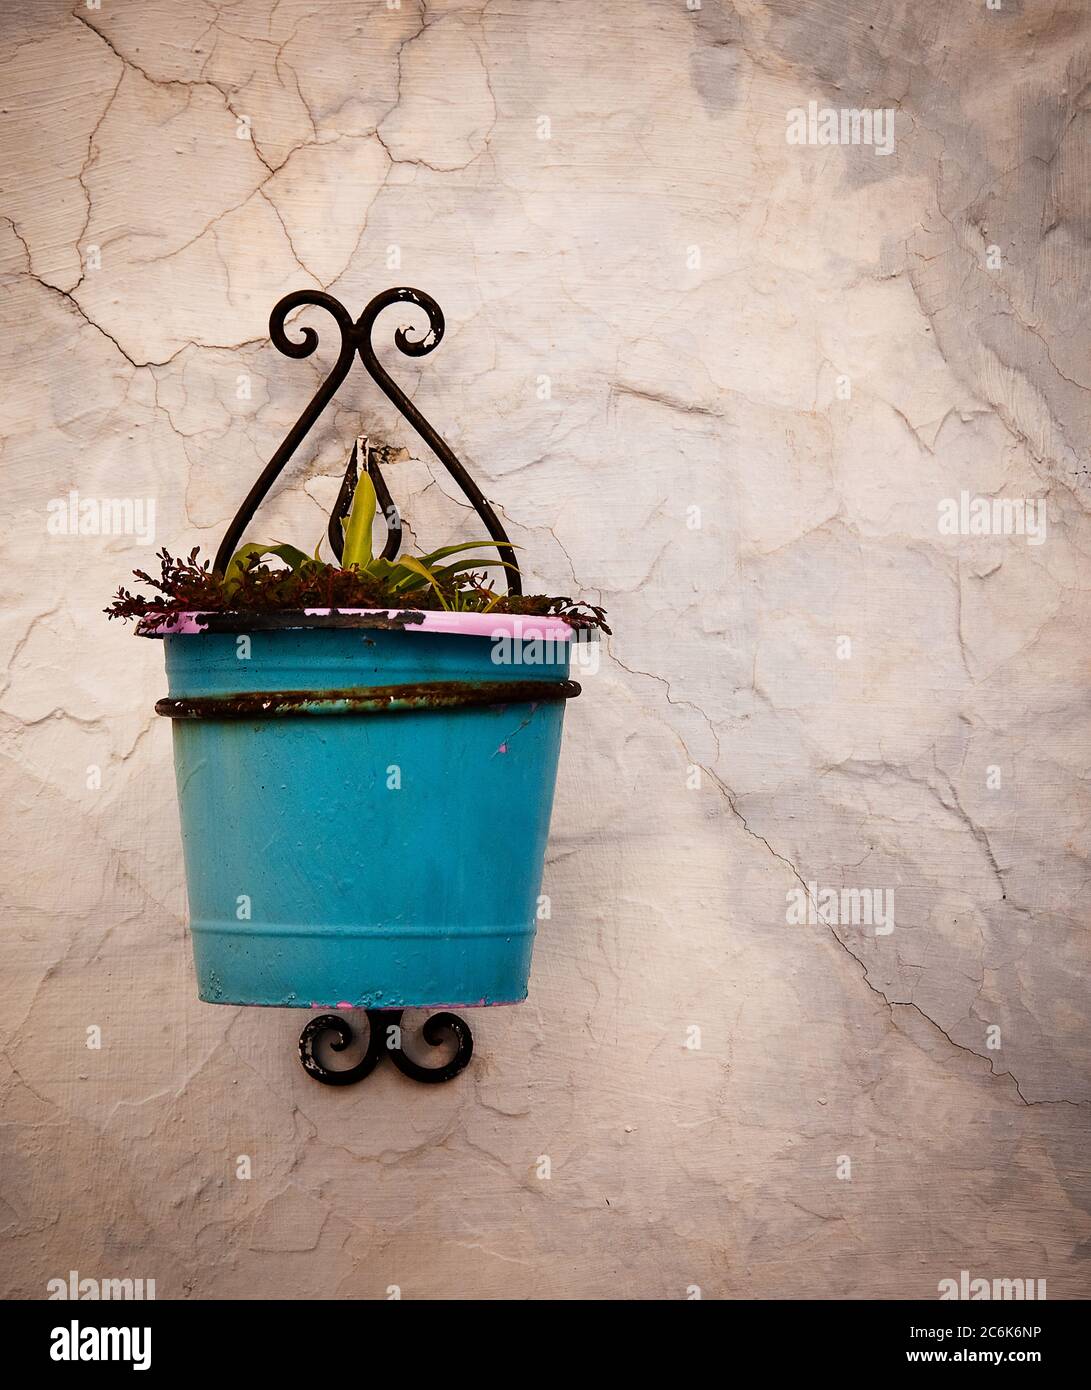 Wall mounted planter, Chefchaouen, Atlas mountains, Morocco Stock Photo